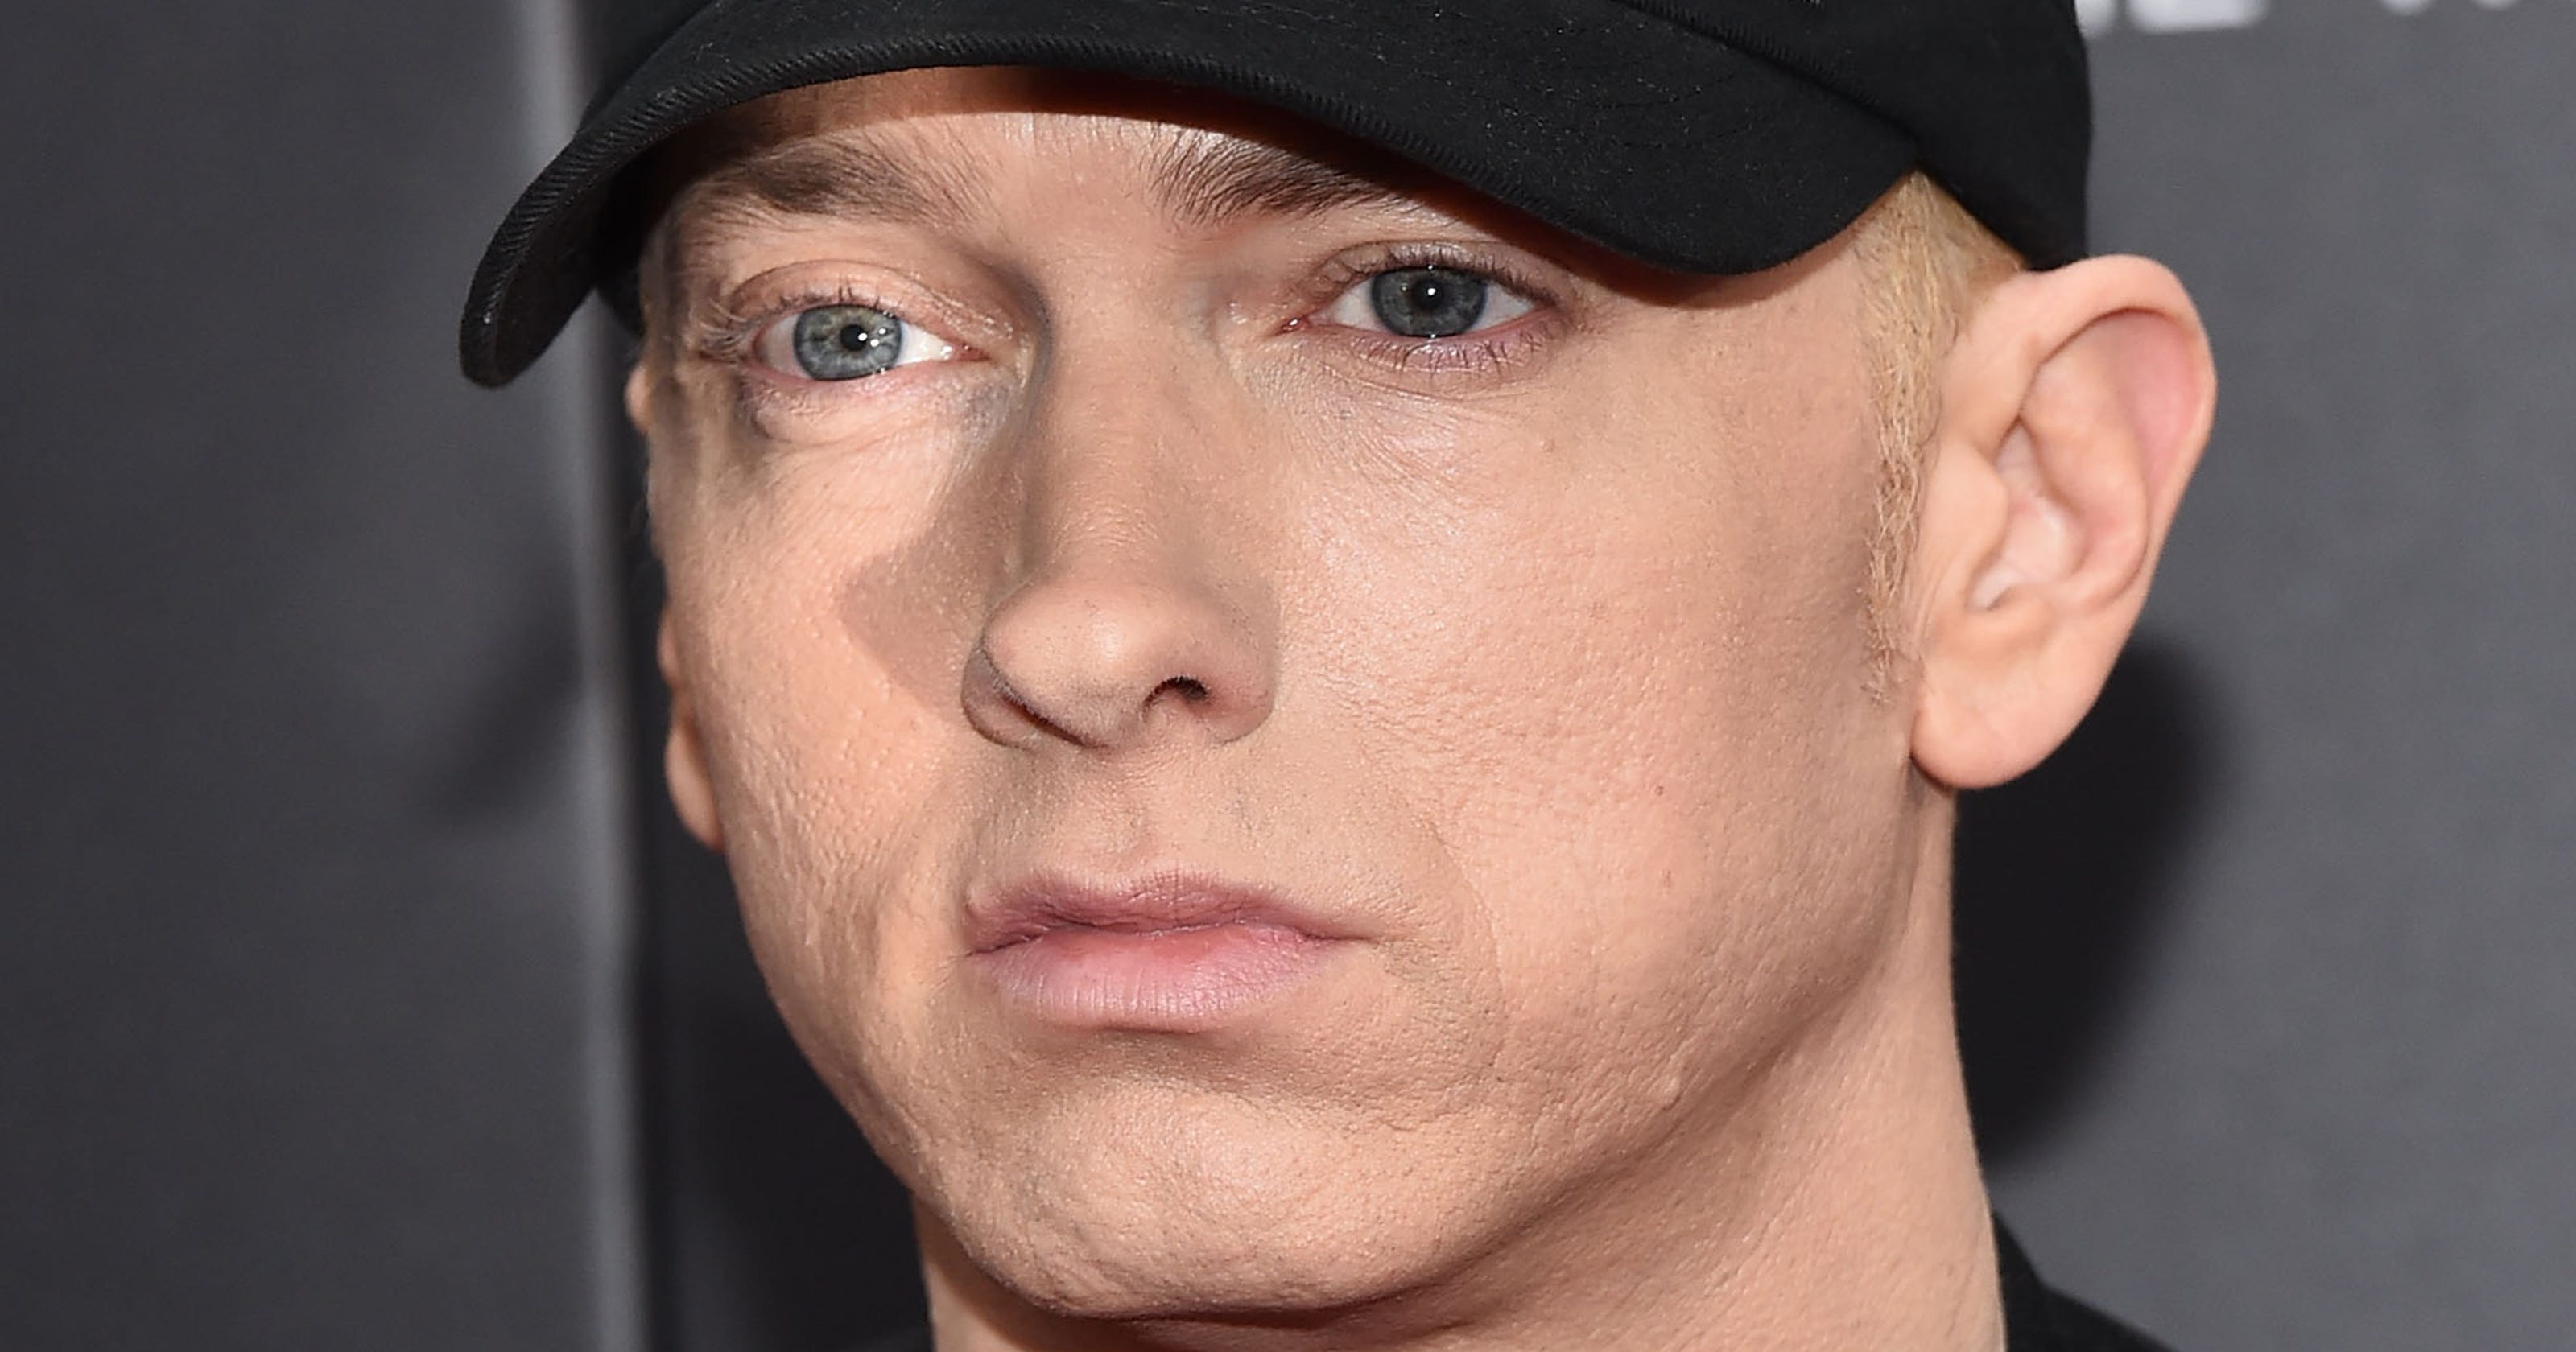 Detroit rapper Eminem says he's on Tinder